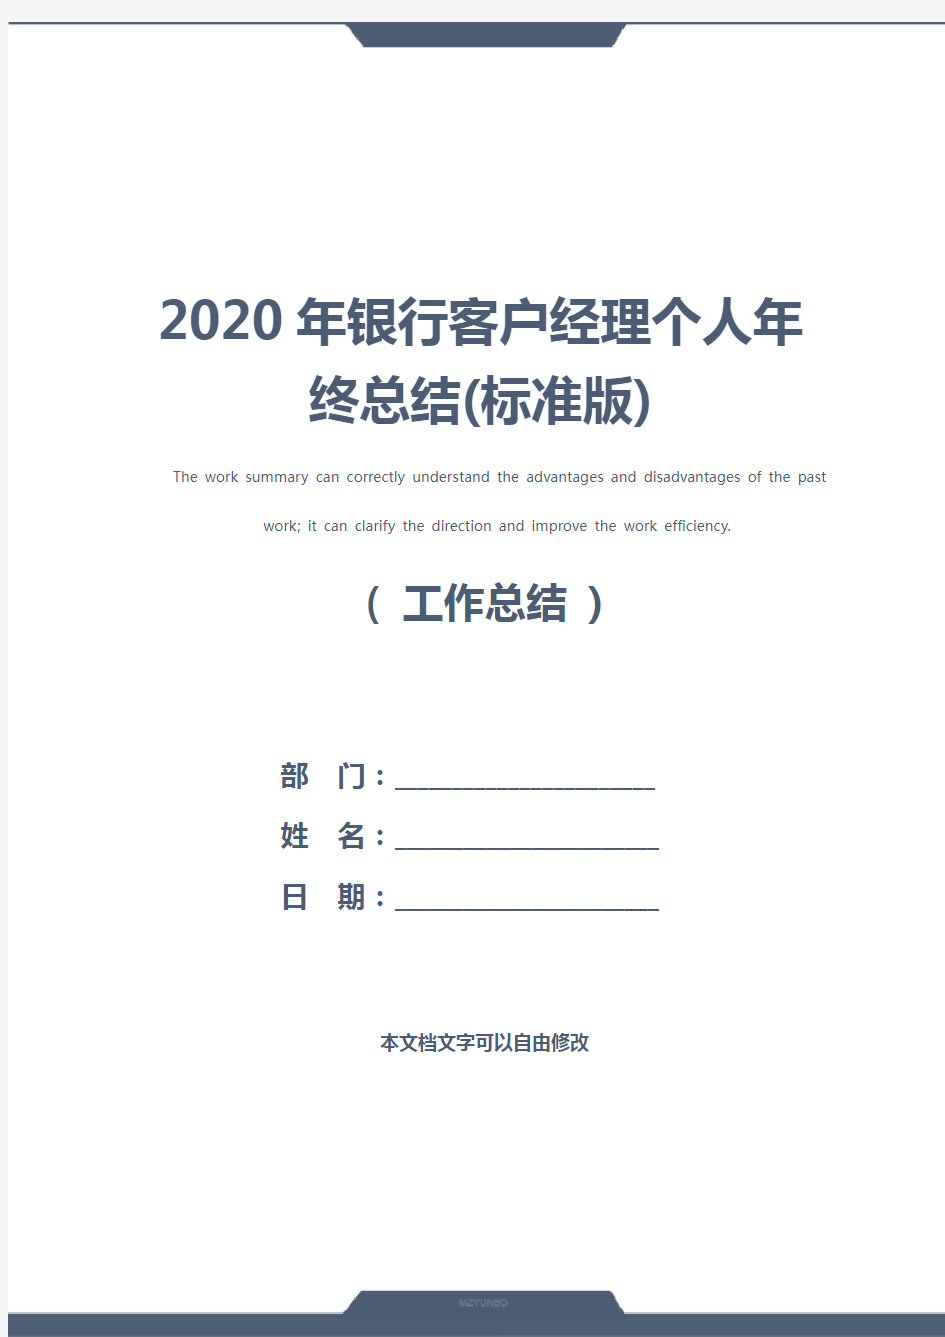 2020年银行客户经理个人年终总结(标准版)